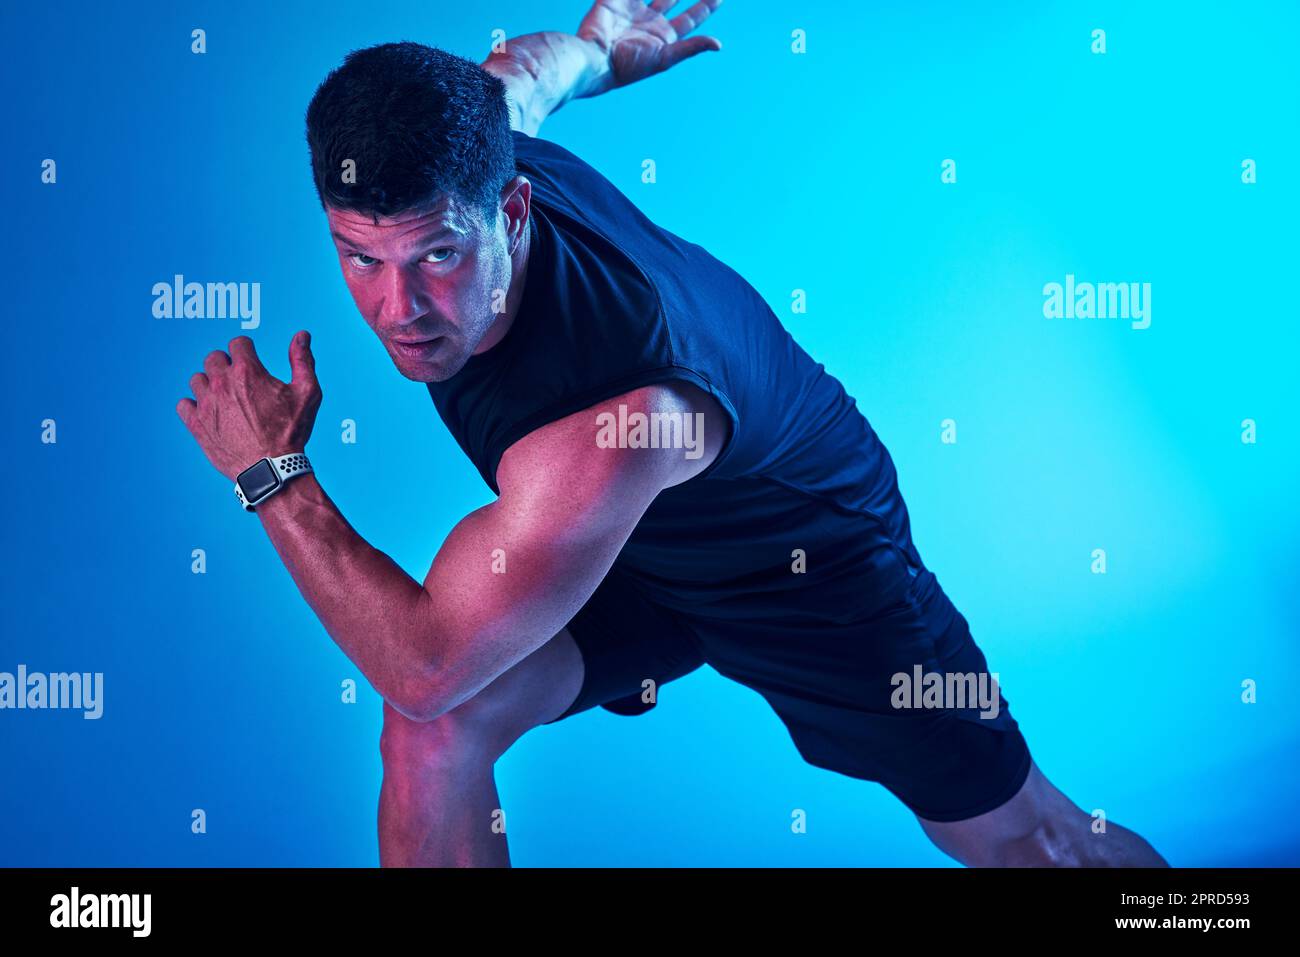 Prêt ou pas, ici je viens. Prise de vue filtrée bleue d'un sportif qui se pose en studio. Banque D'Images